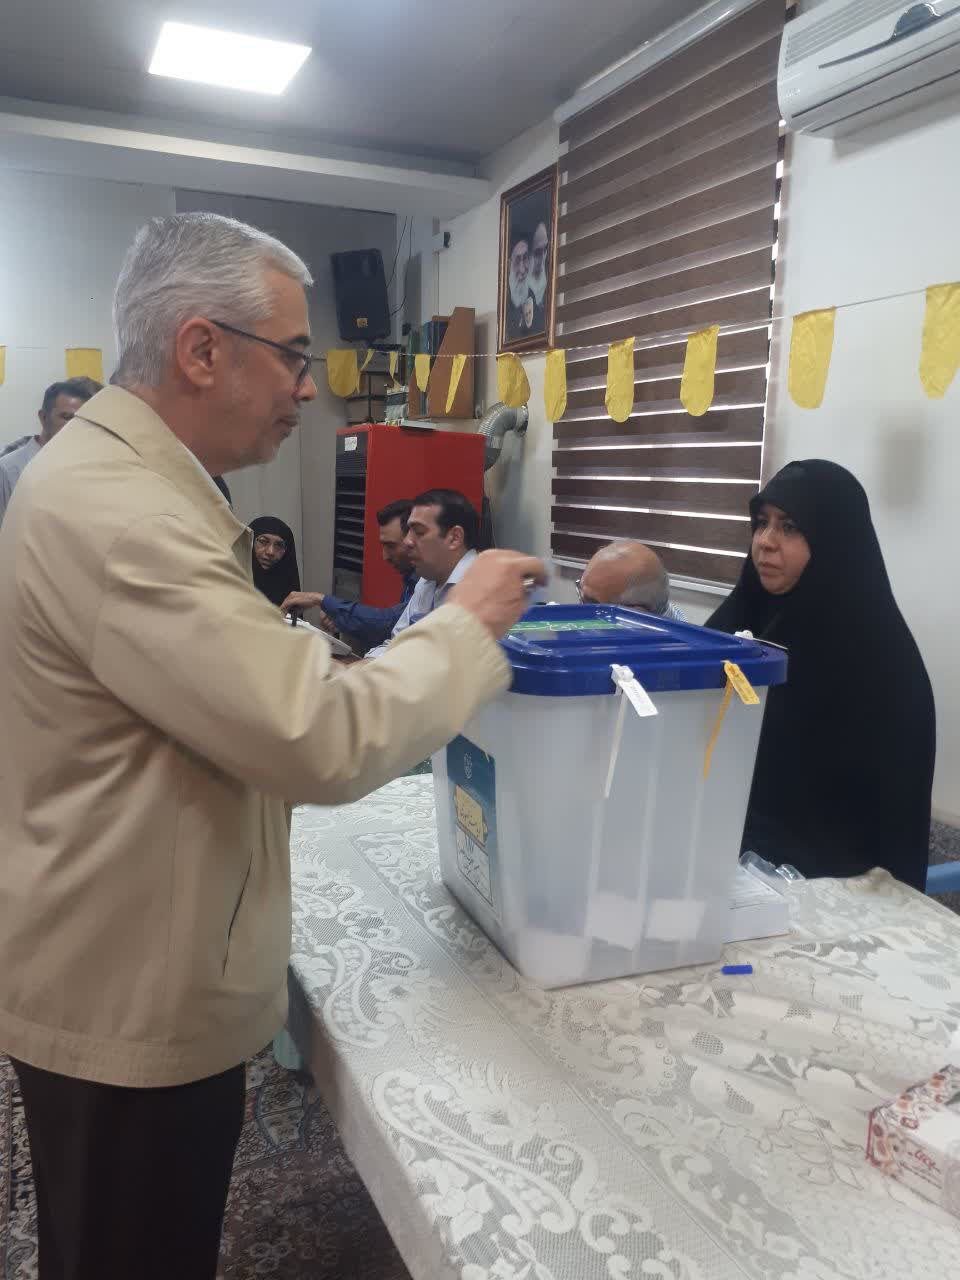  پوشش متفاوت فرمانده ارشد ایرانی حین رای دادن 